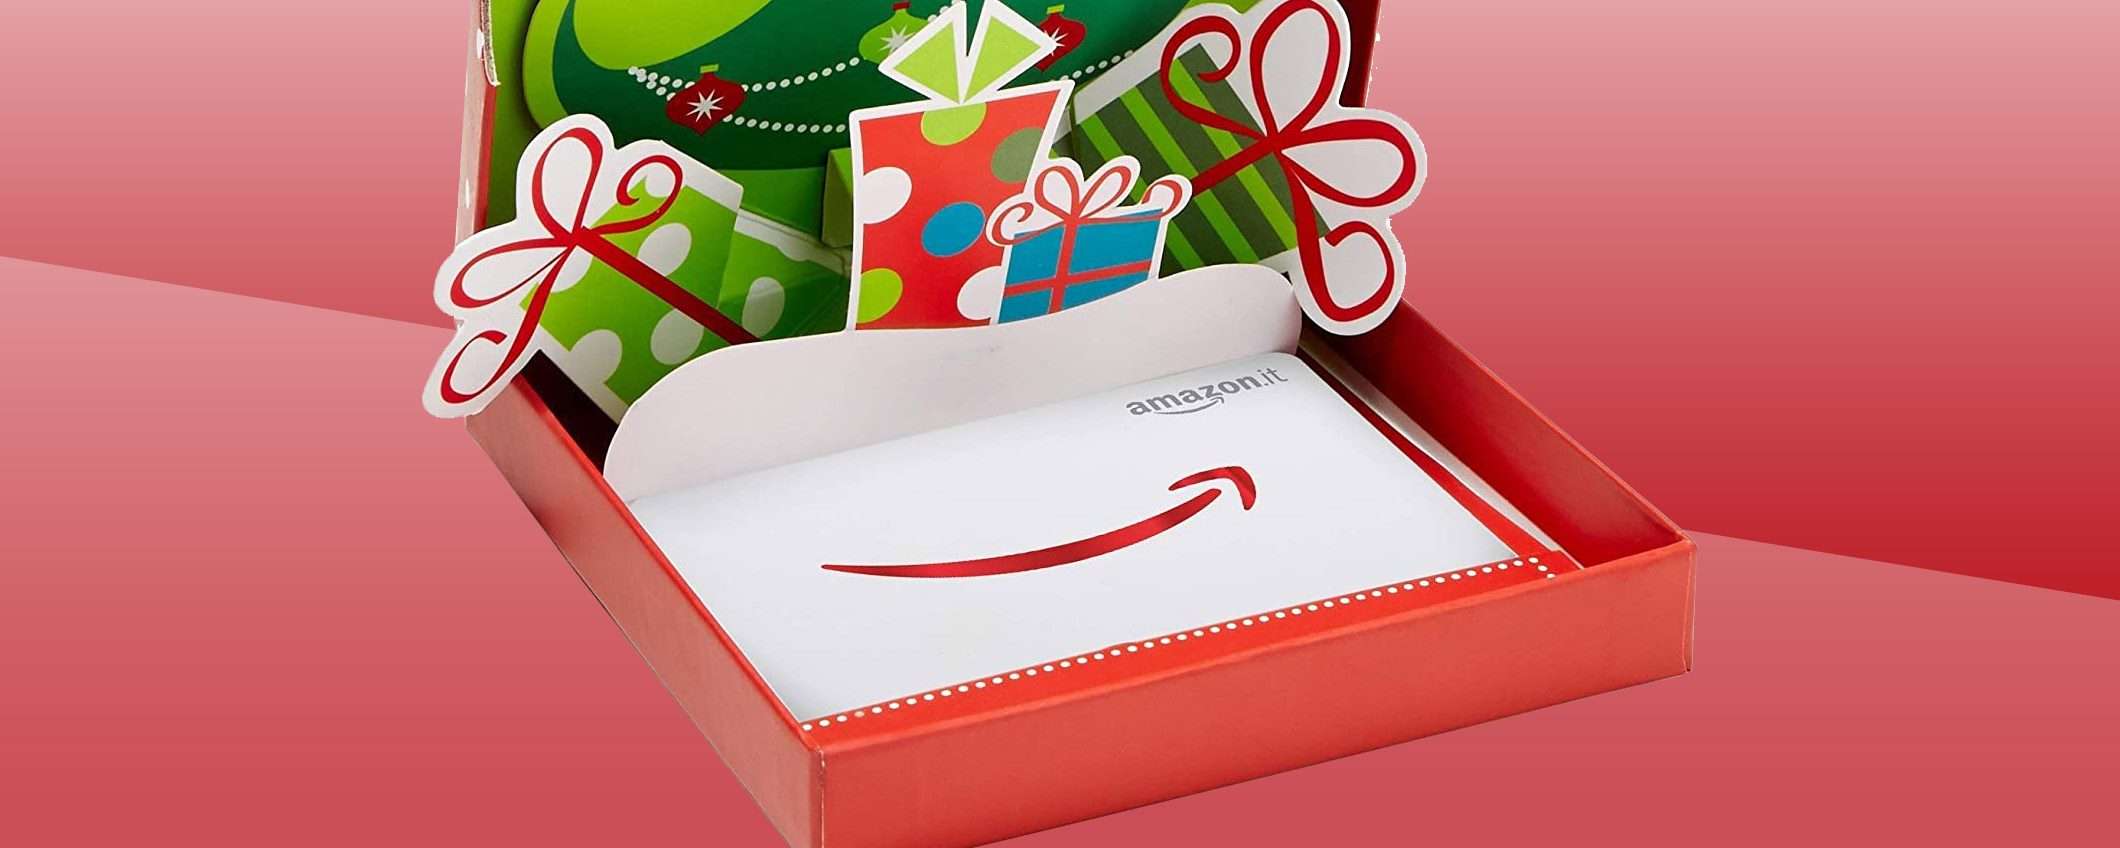 Idee per Natale? Il buono regalo Amazon arriva a casa